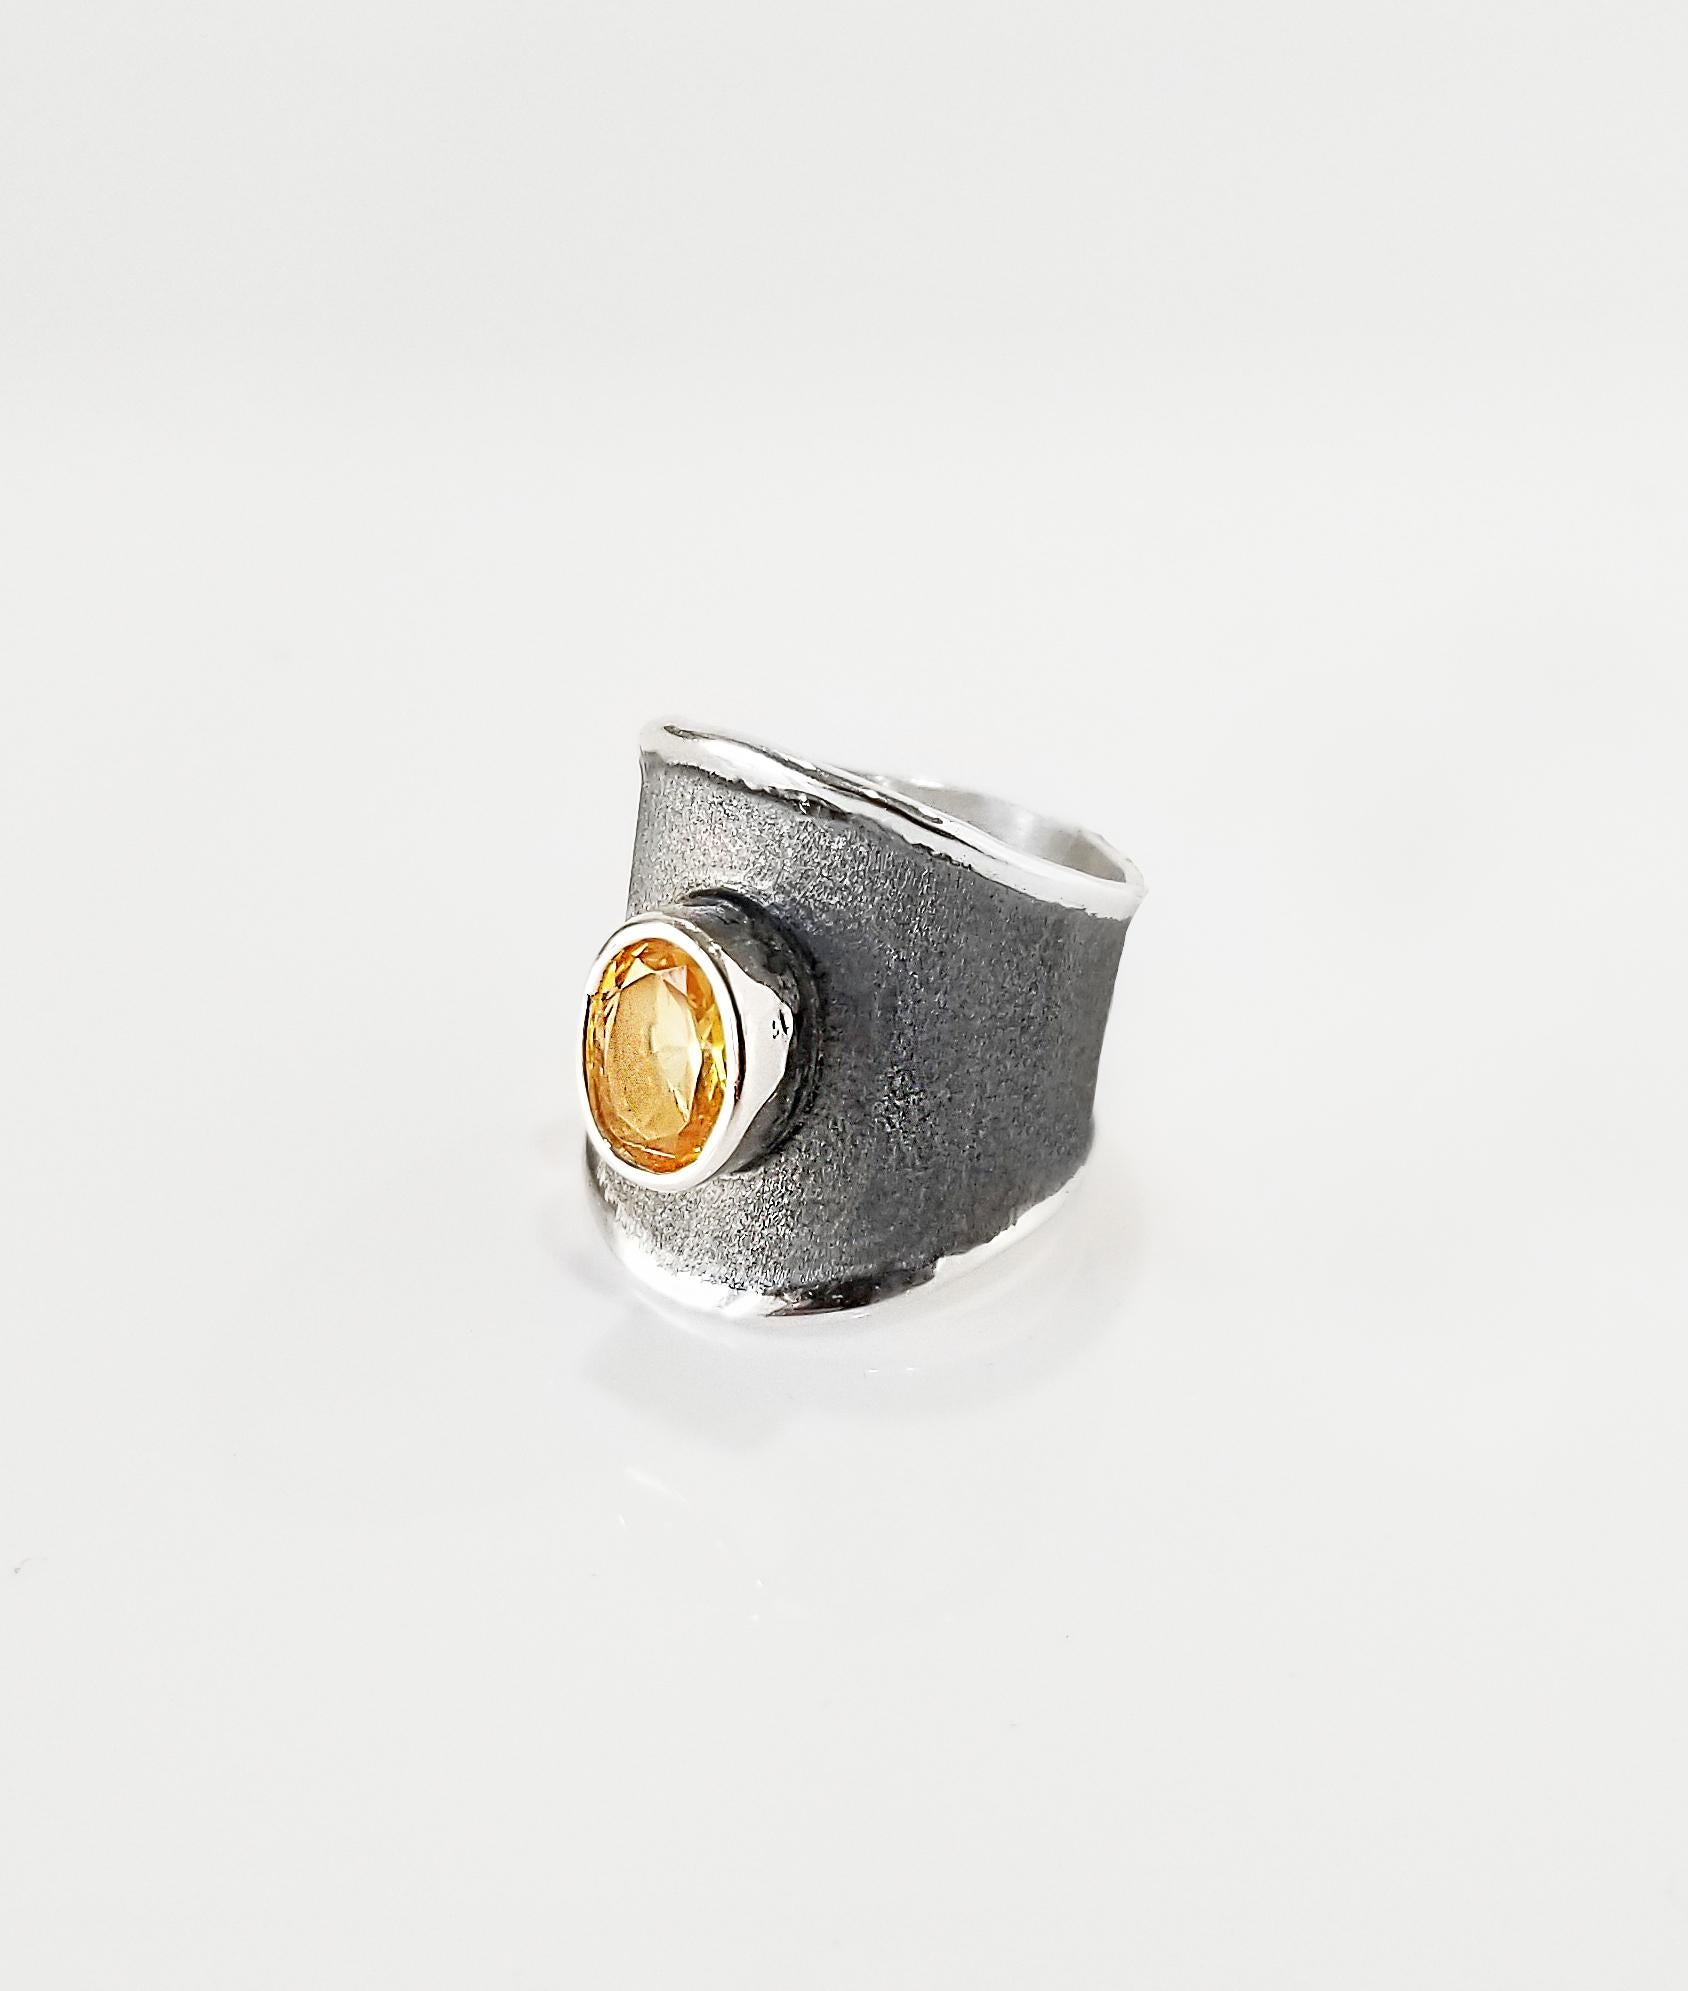 Yianni Creations Hephestos Collection 100% handgefertigter handwerklicher Ring aus Feinsilber. Der Ring ist mit einem 1,35 Karat großen Citrin im Ovalschliff und einem einzigartigen oxidierten schwarzen Rhodiumhintergrund versehen, die beide durch